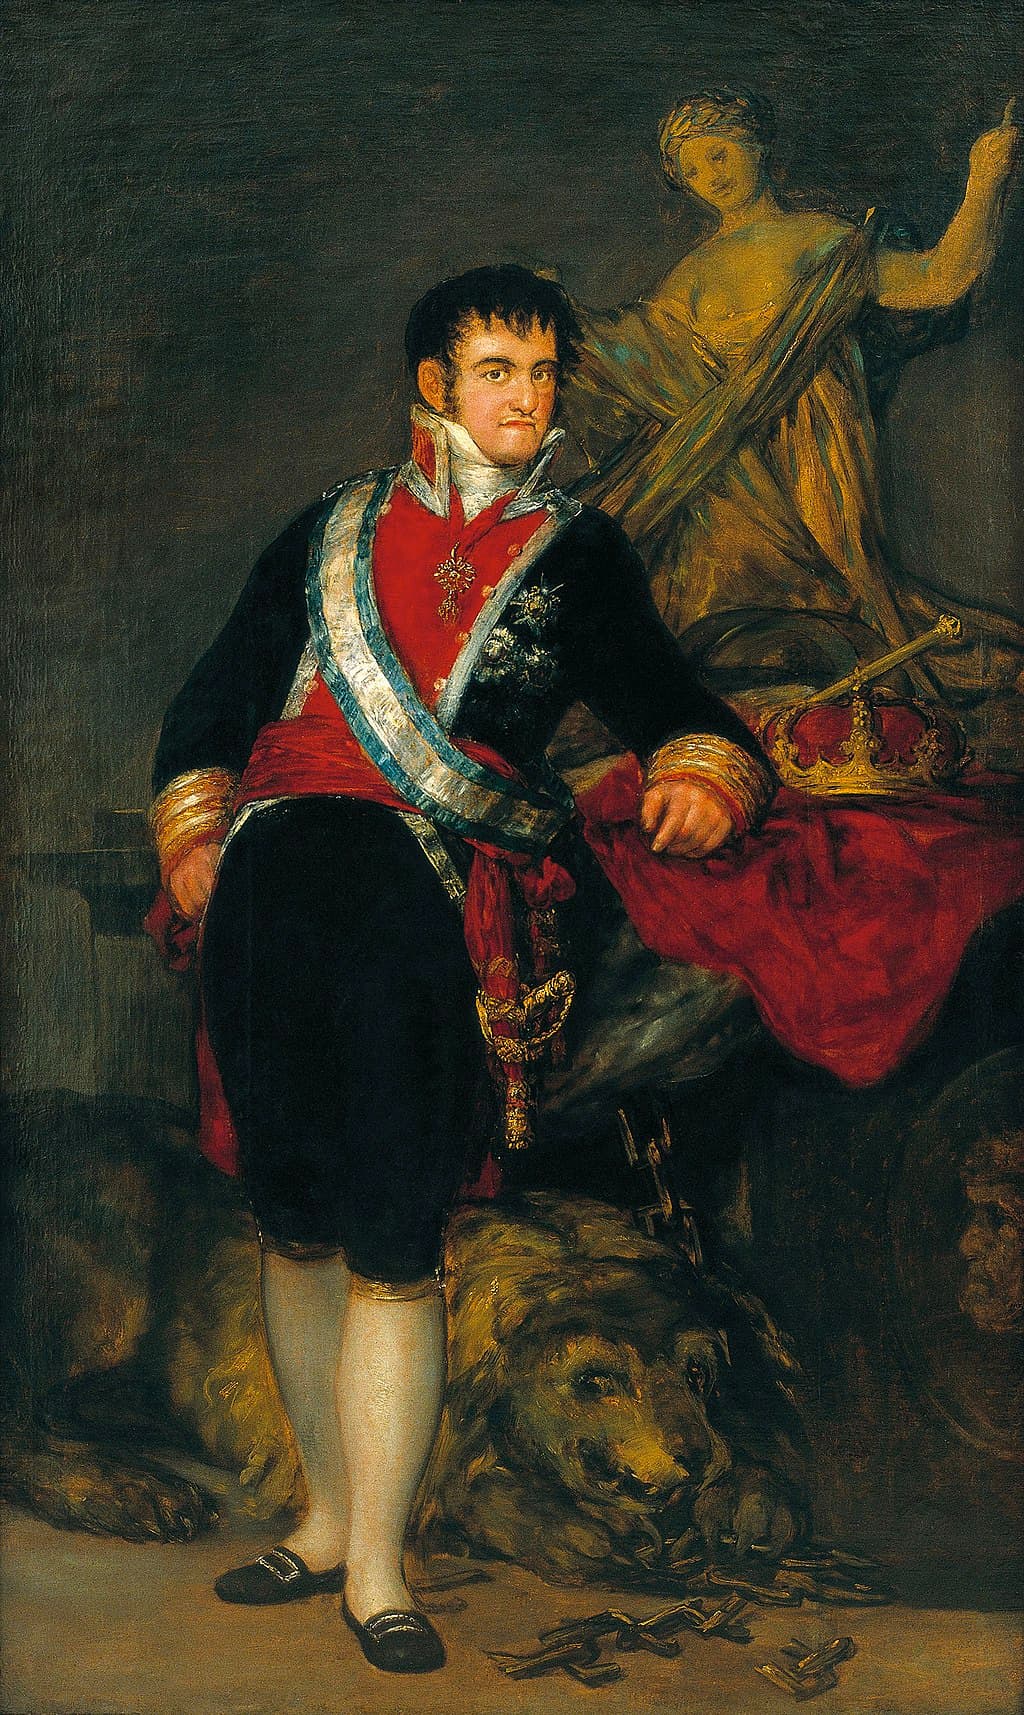 Retrato del rey Fernando VII pintado por Francisco de Goya en 1814, por encargo del Ayuntamiento de Santander. Goya lo representó como un rey deseado, vestido con uniforme de coronel de la guardia real y apoyado sobre un pedestal en el que una figura femenina que representa a España lo recibe con los brazos abiertos.